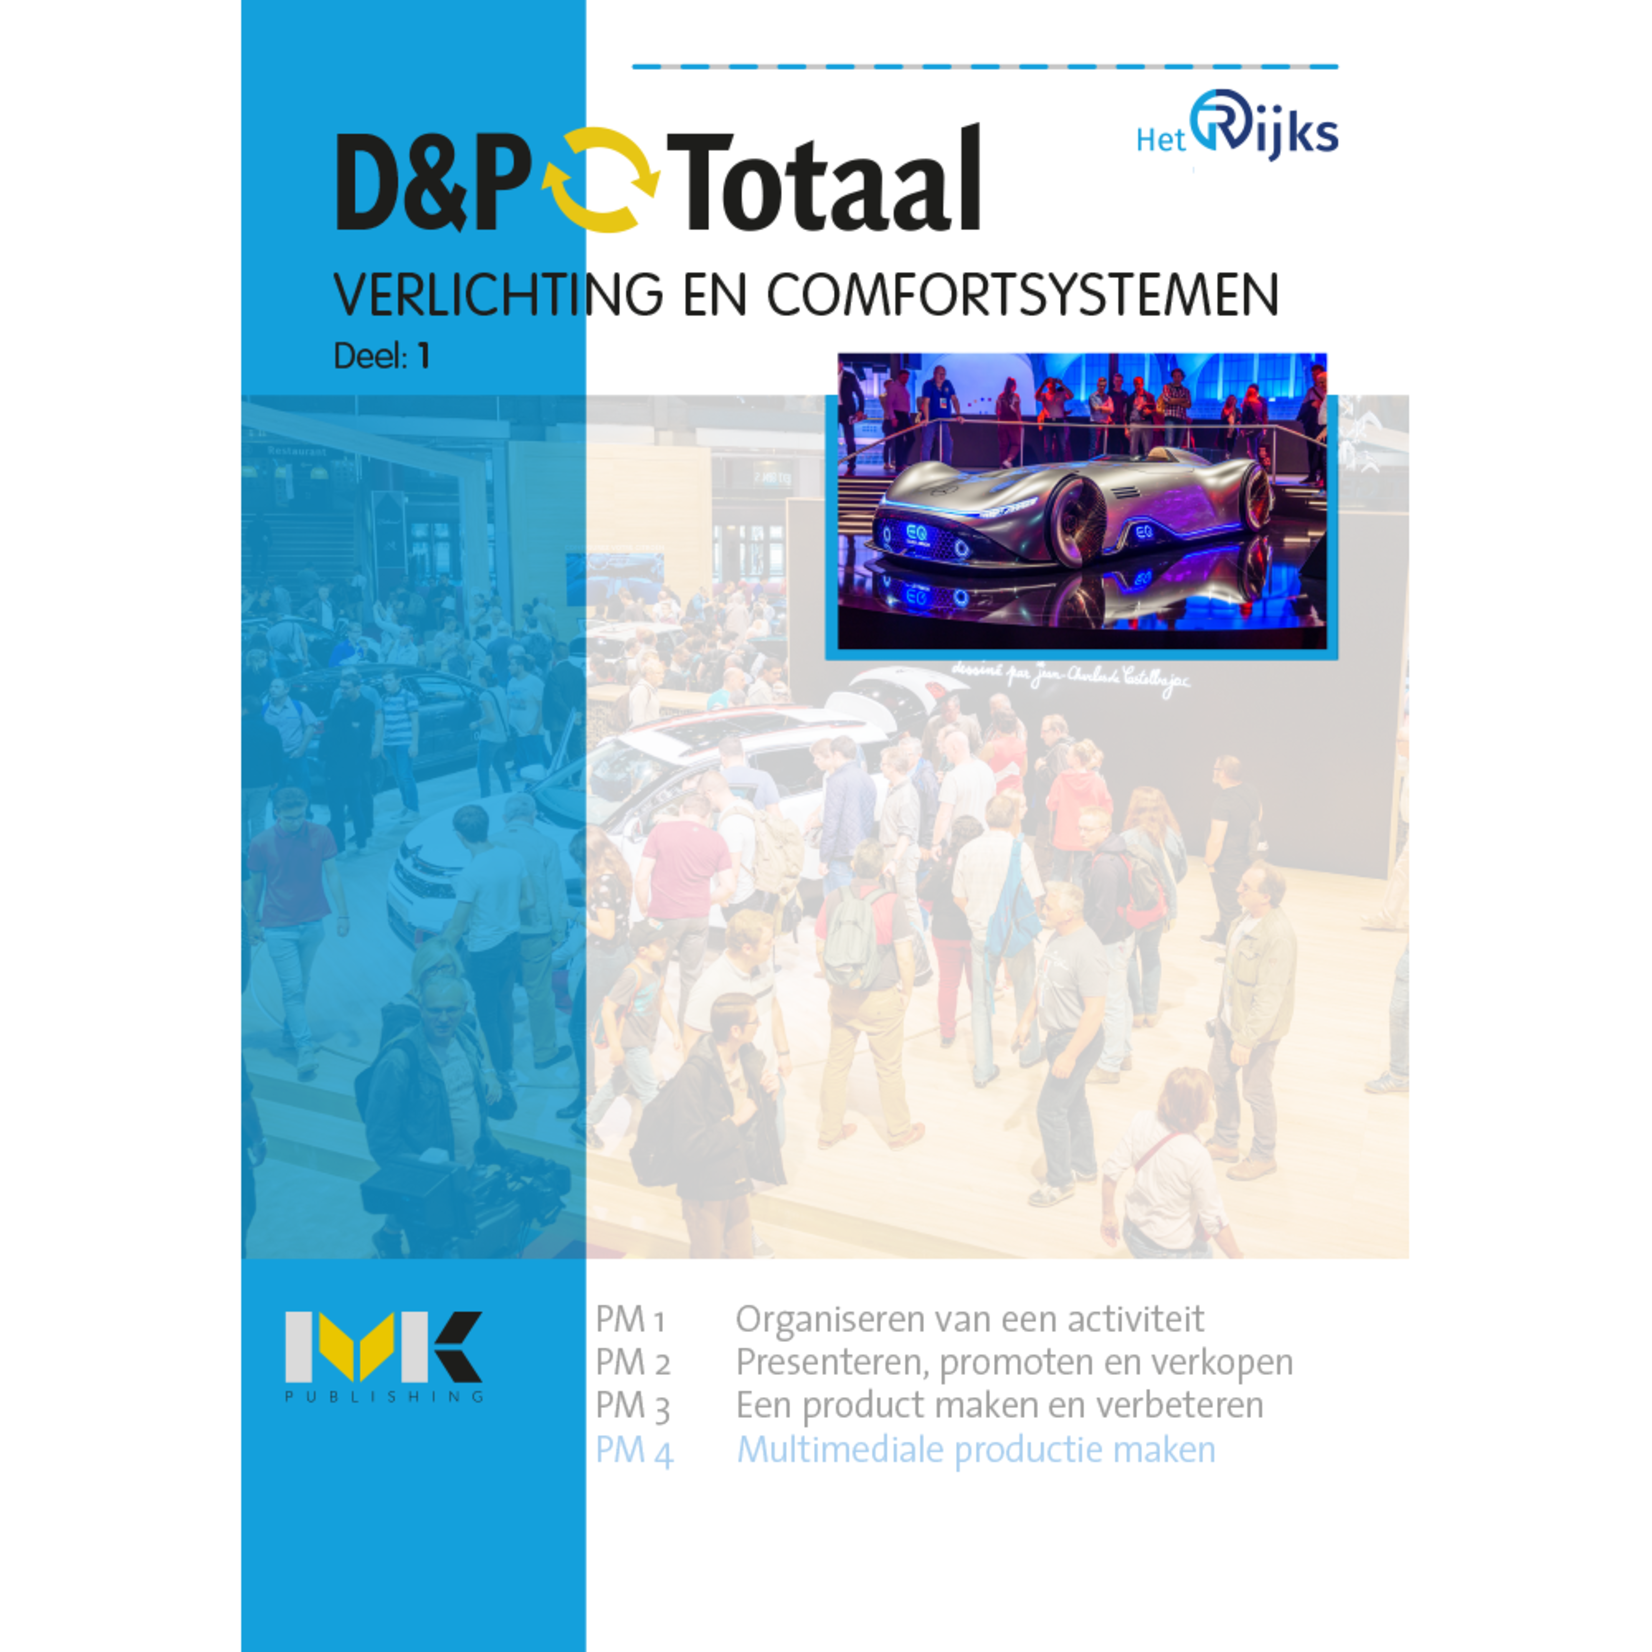 D&P-Totaal - M&T Verlichting en comfortsystemen (PM4)